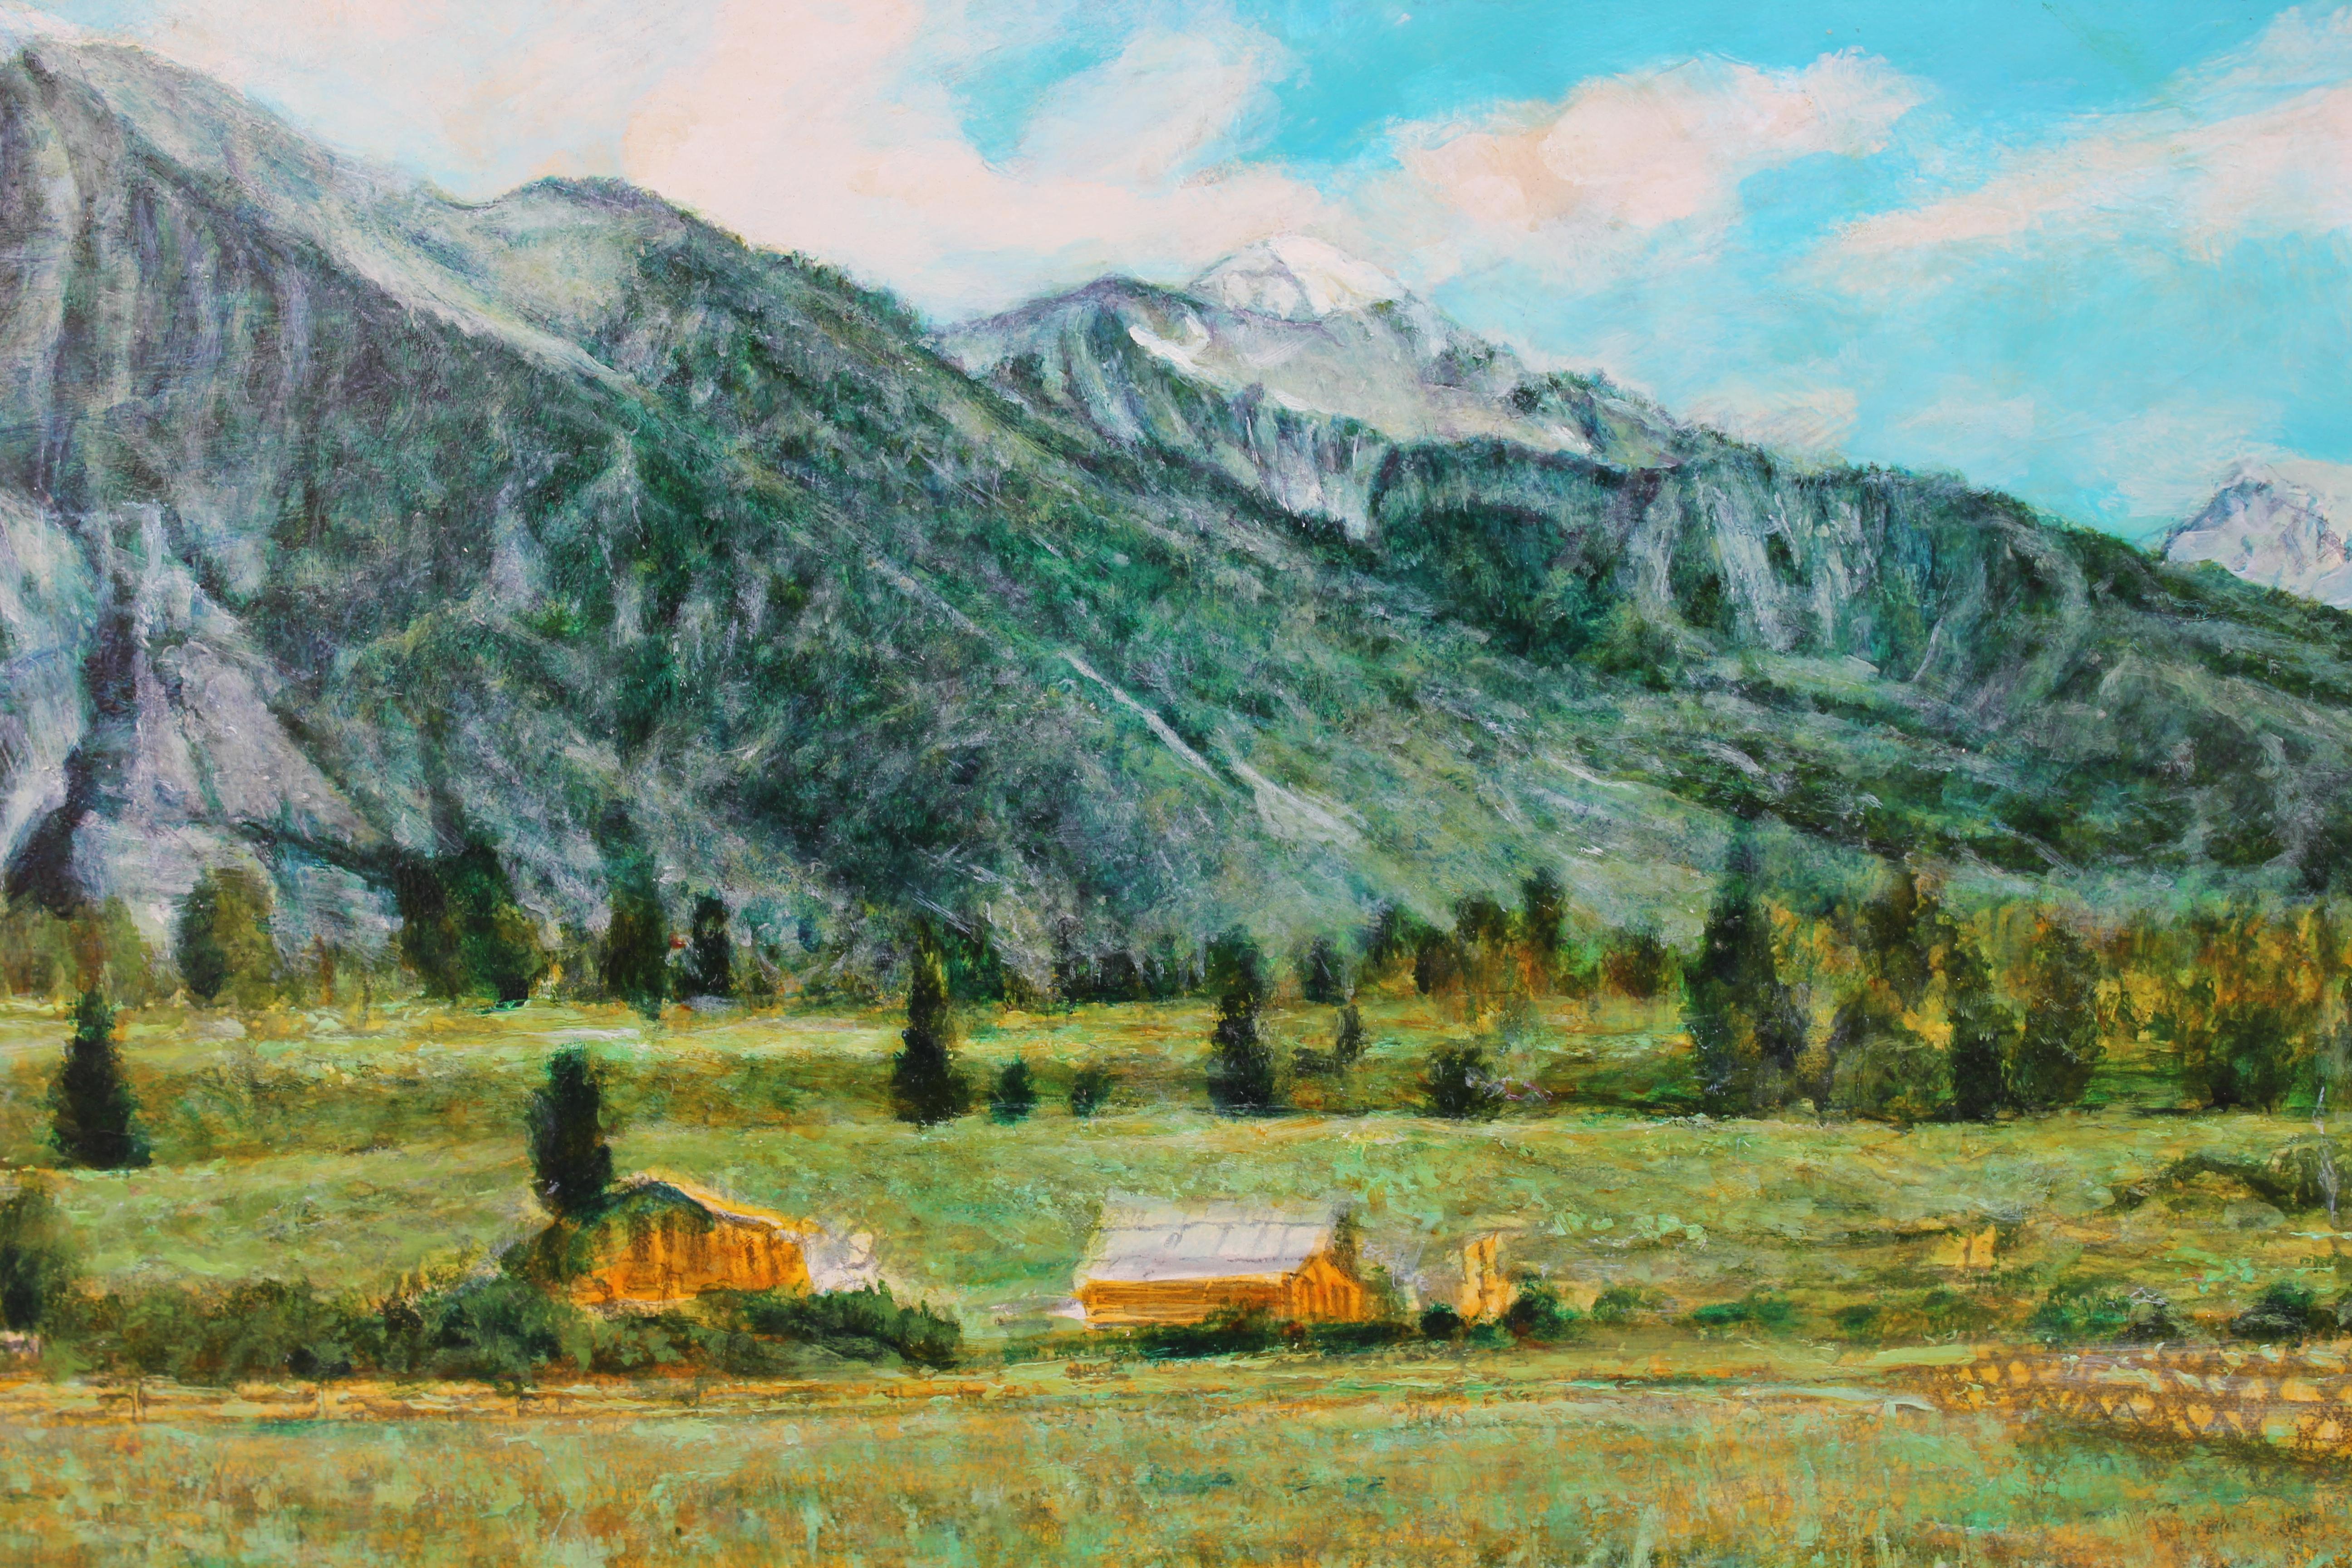 Landscape of Colorado Mountainside  - Art by Robert W. Boyle